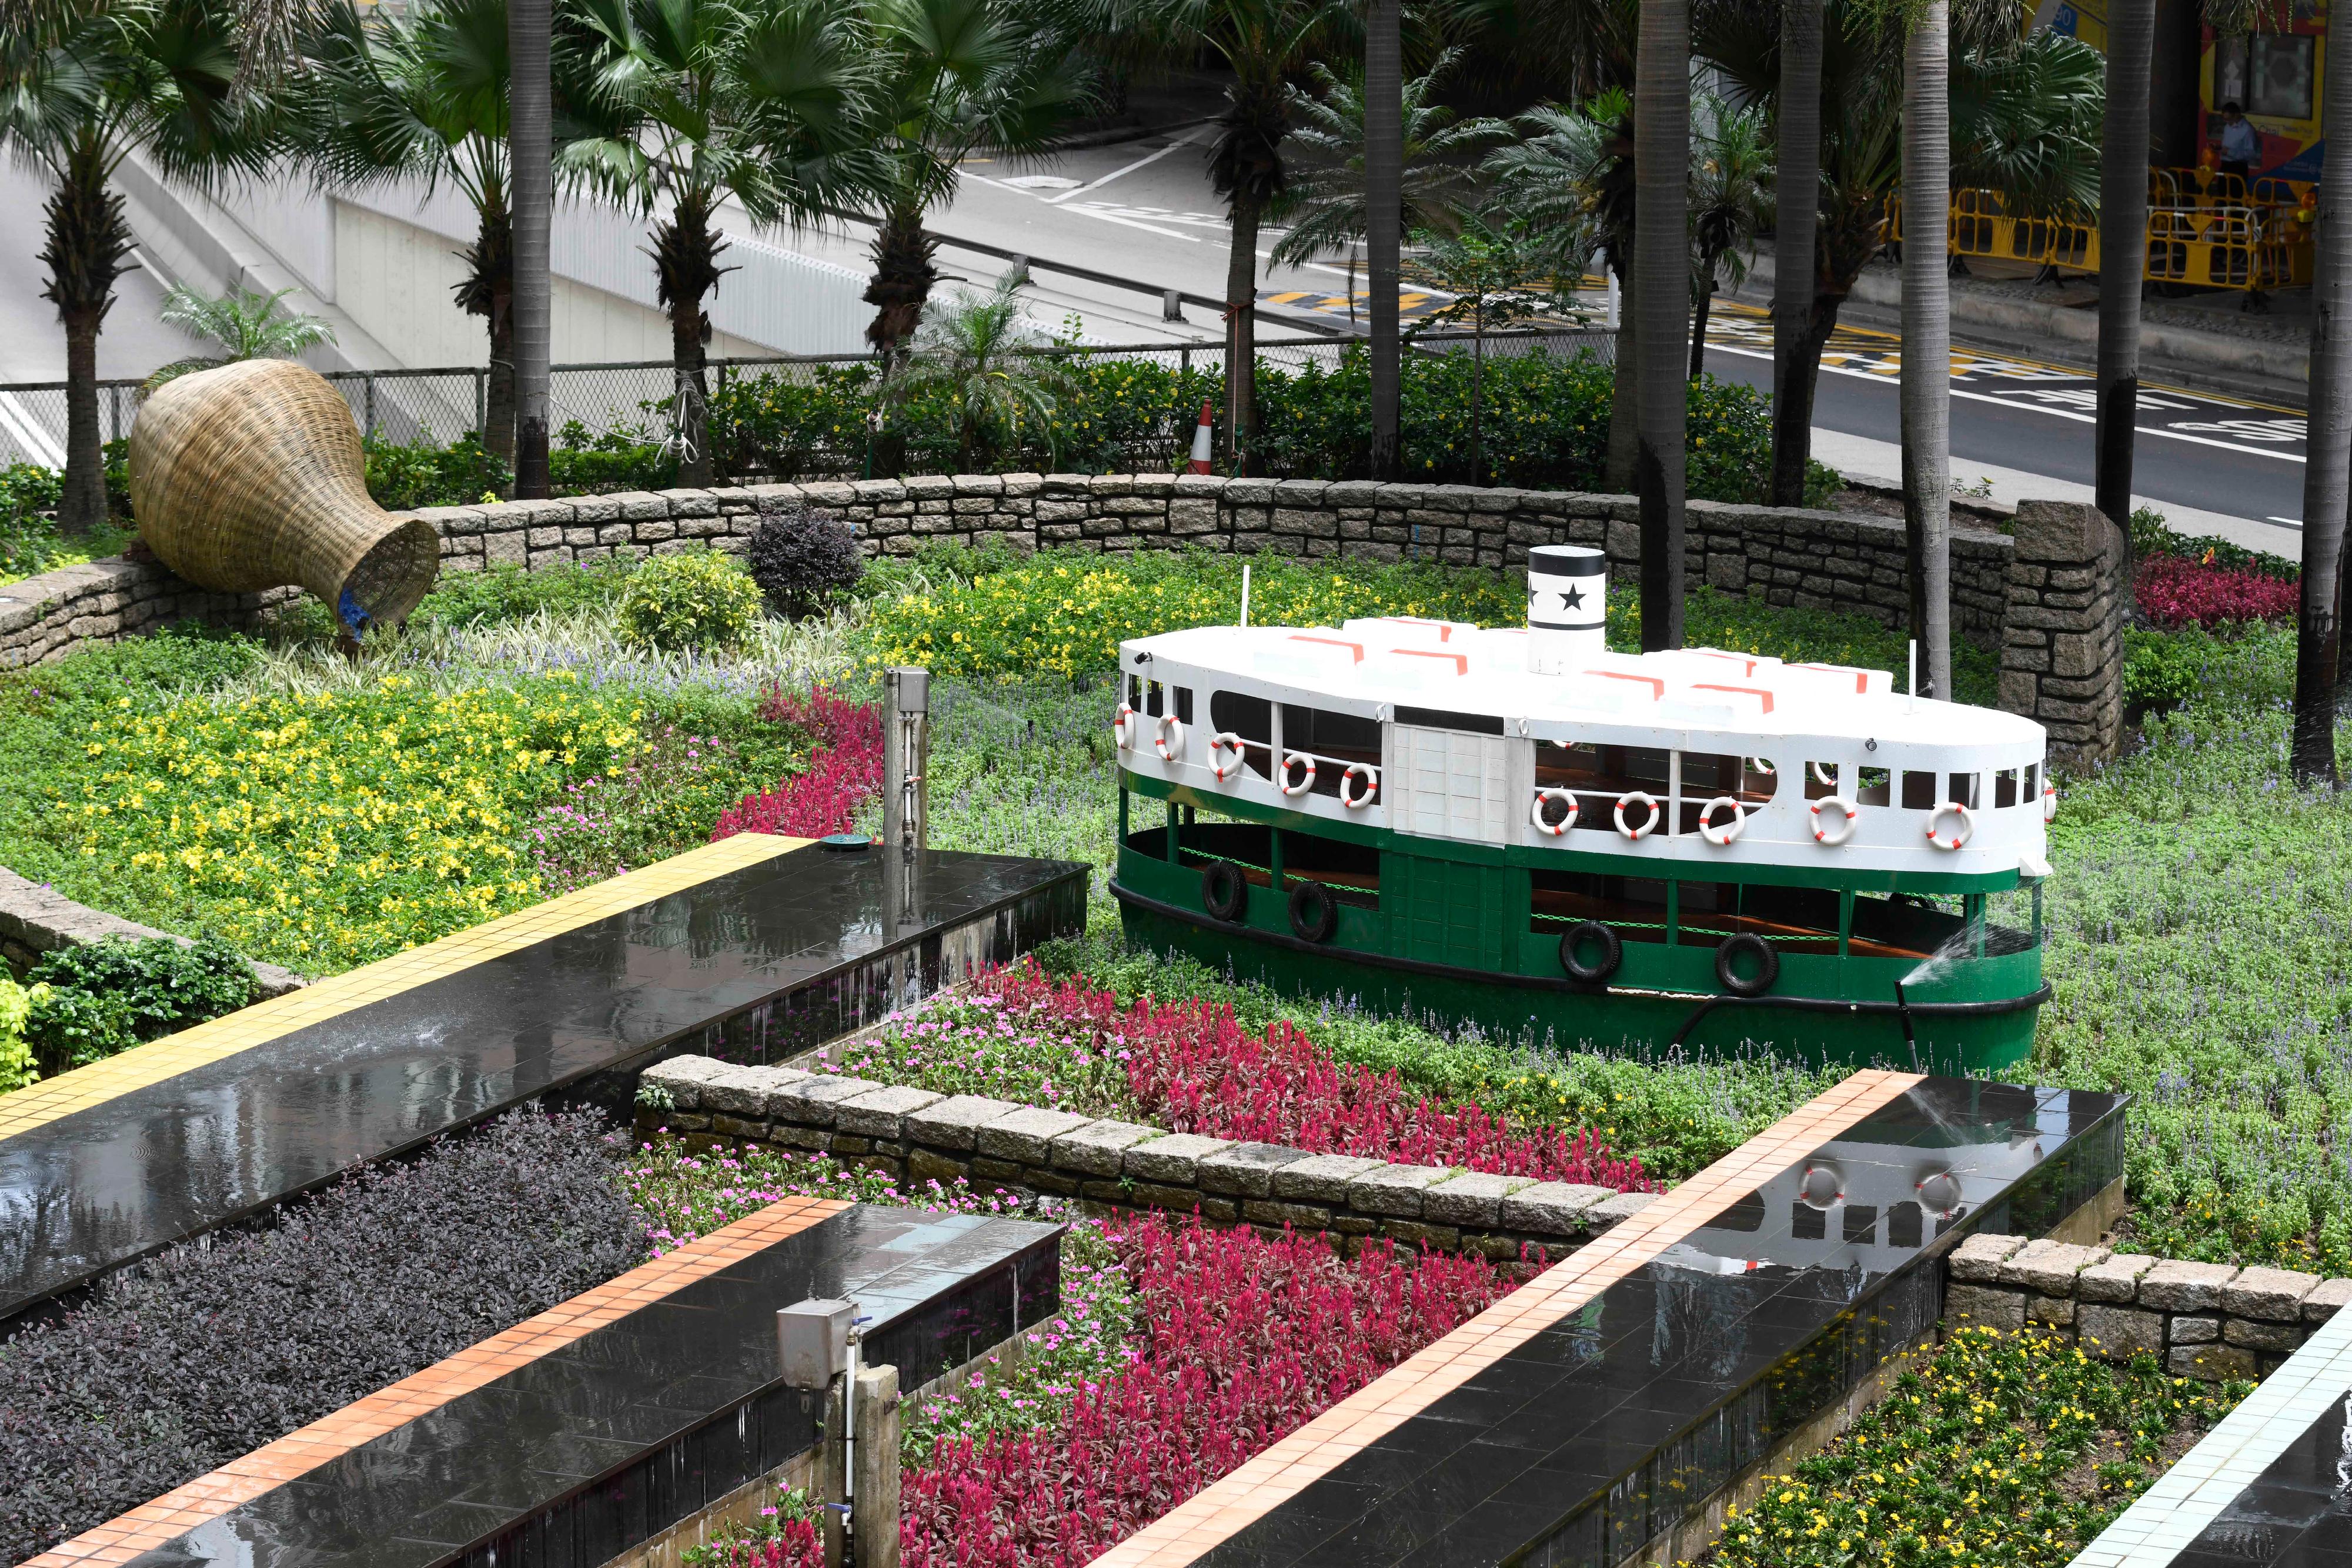 康樂及文化事務署將於六月至十月分階段推展「花悅滿城」計劃。圖示畢打街迴旋處的主題園圃「花影縈懷維港情」。